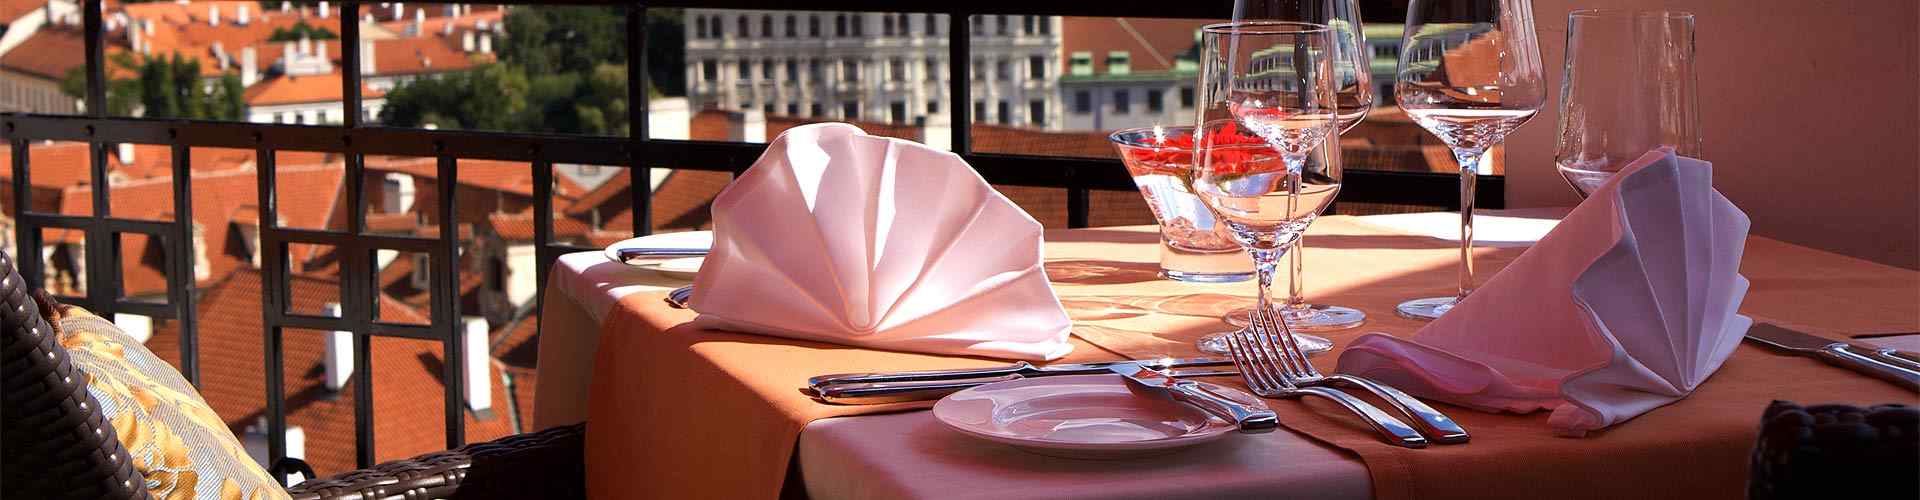 Restaurantes románticos con terraza en Alameda
          
          
